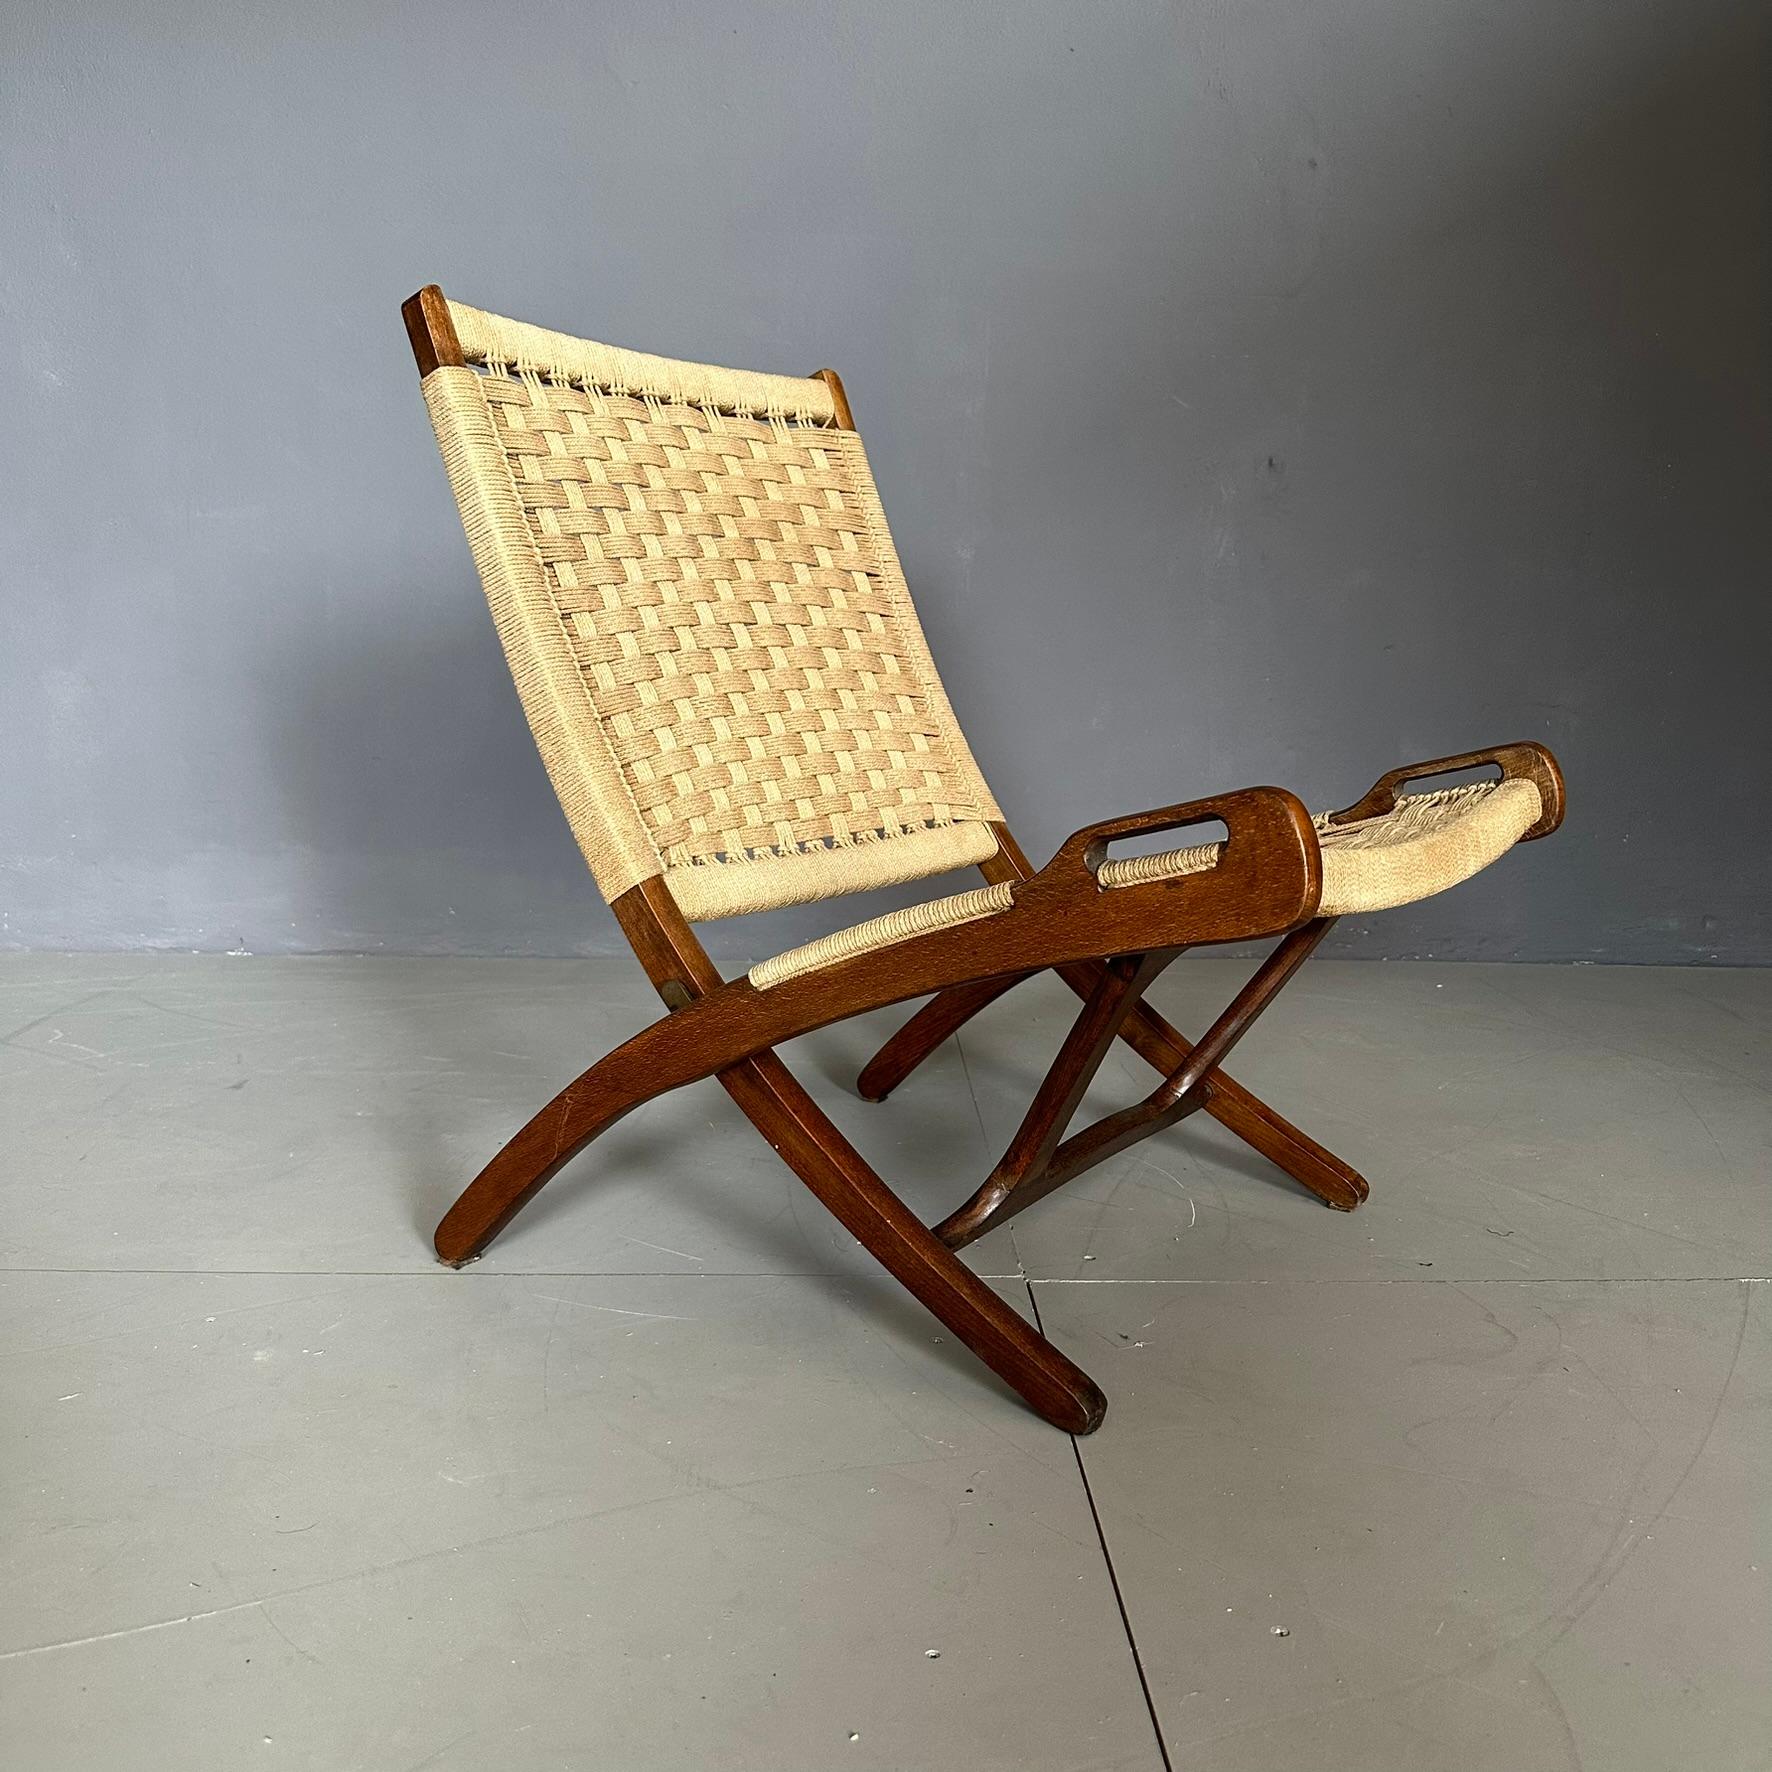 Sessel aus den sechziger Jahren, englische Herstellung.
Der Sessel hat eine Struktur aus Massivholz, mit Sitz und Rückenlehne aus Seil mit Messingknöpfen.
Der Sessel ist klappbar.
Sitztiefe: 48cm
